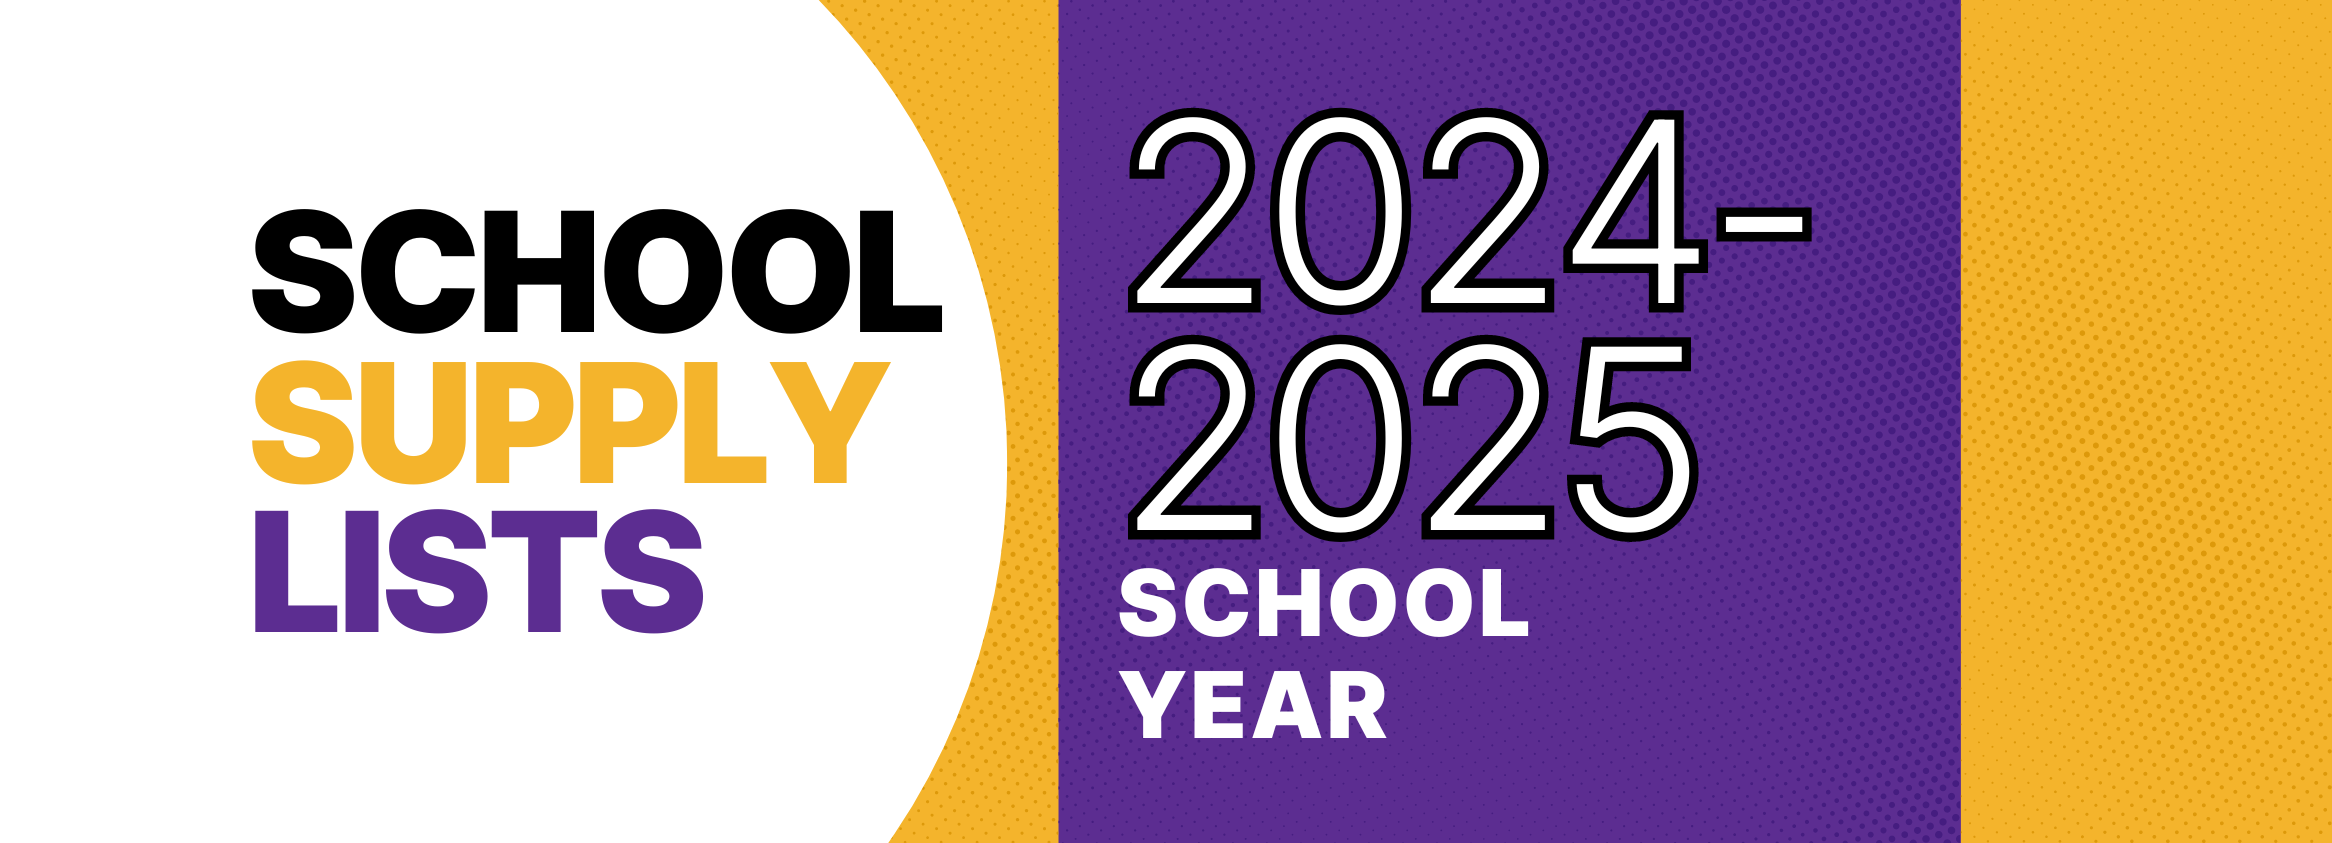 School Supply Lists 2024-2025 School Year